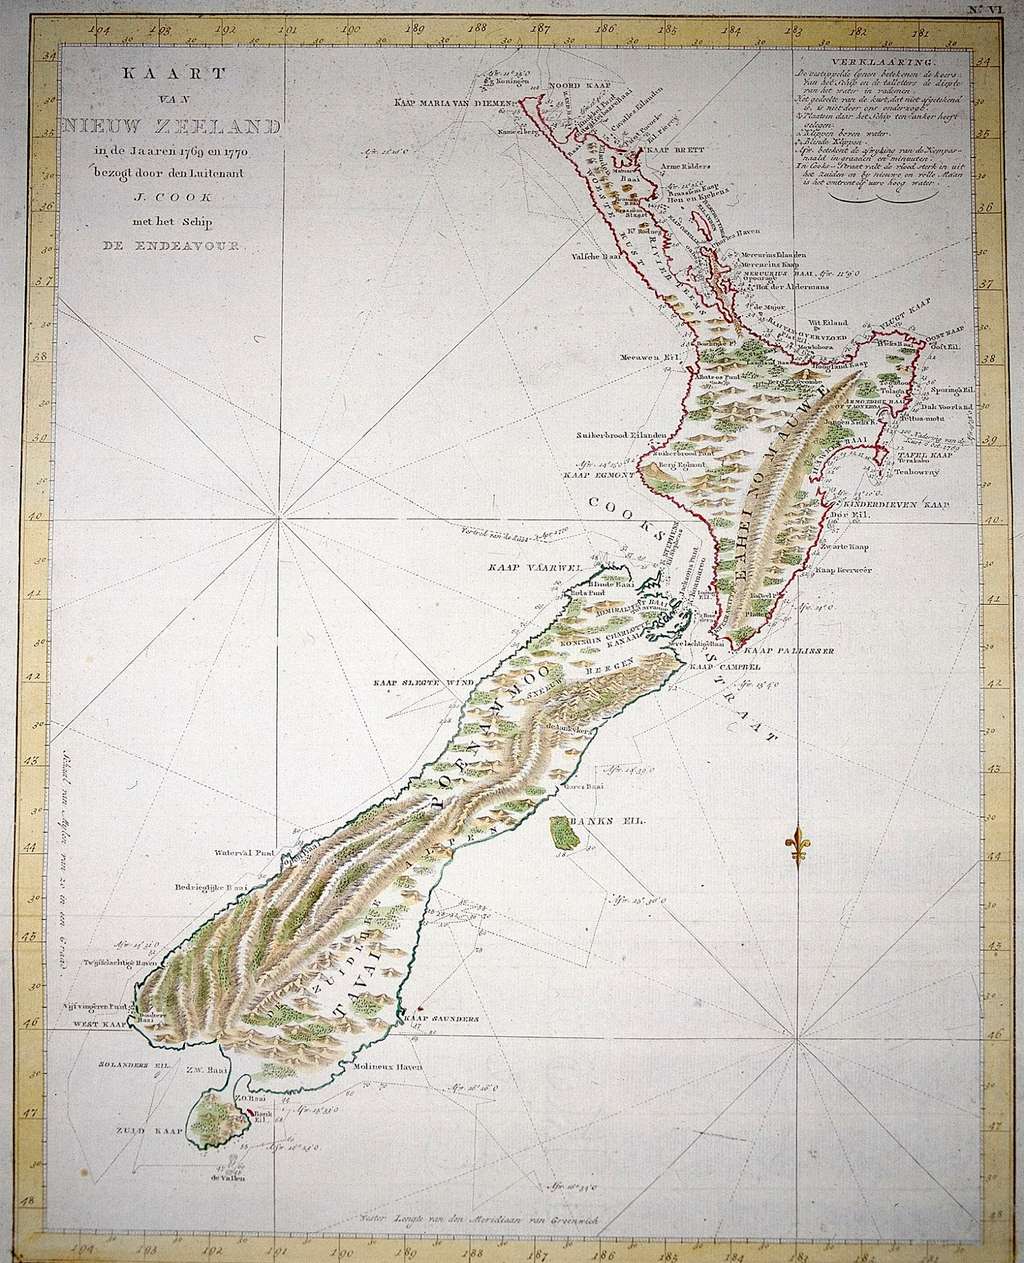 Carte de la Nouvelle Zélande par James Cook, 1769-1770. © Mary Evans, Rue des Archives.